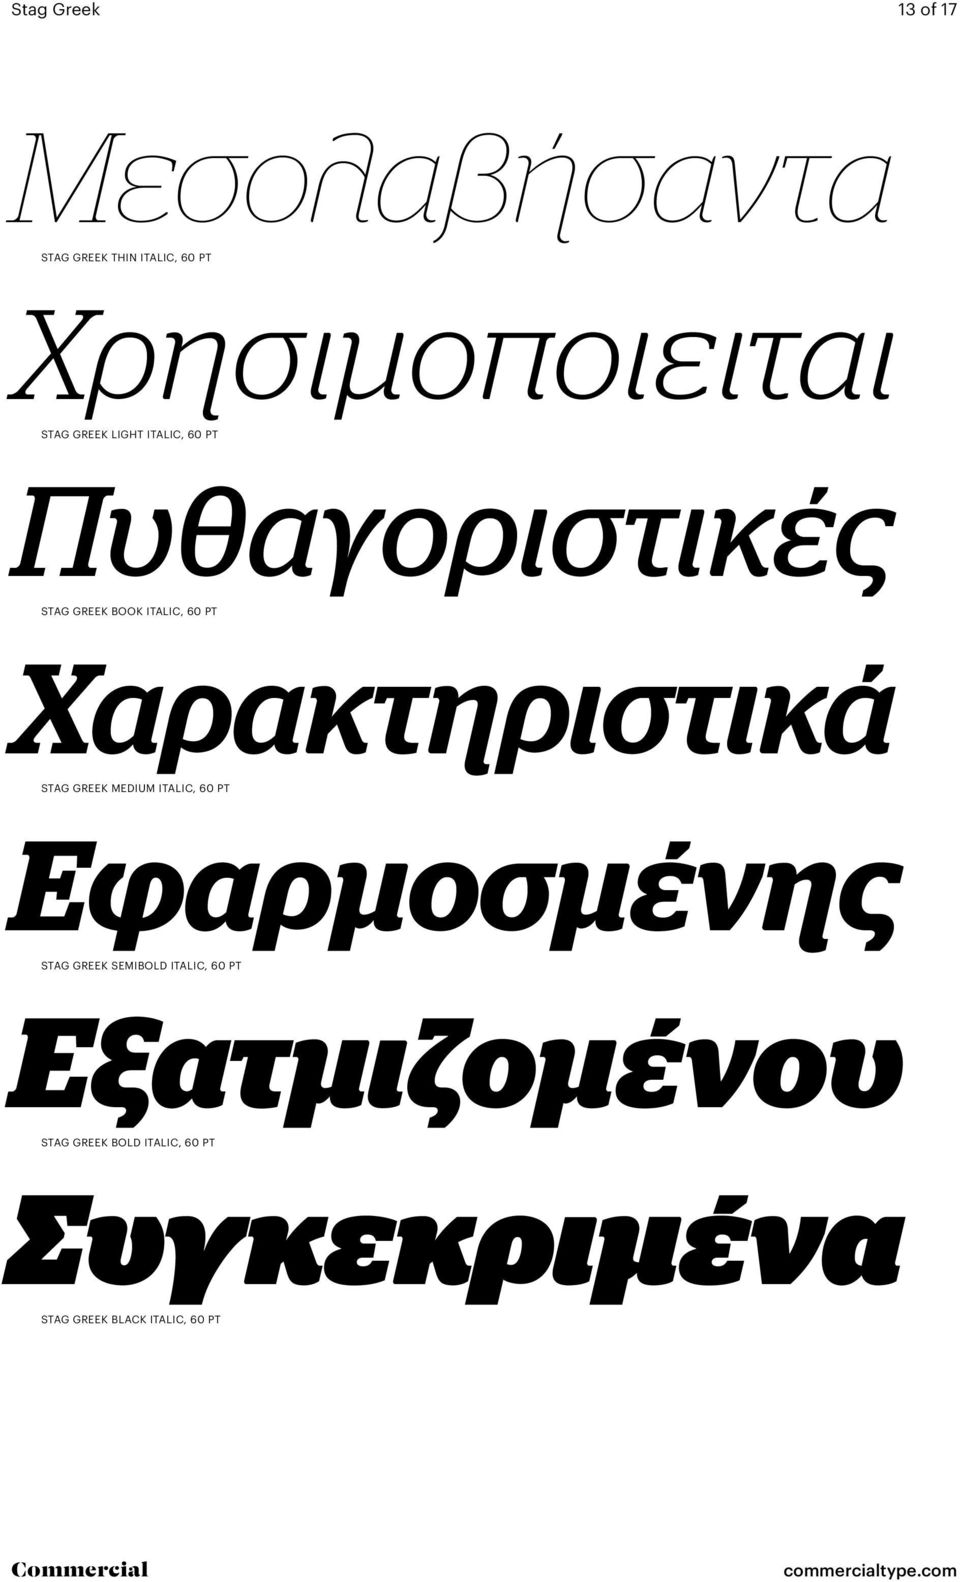 Χαρακτηριστικά Stag Greek medium italic, 60 Pt Εφαρμοσμένης Stag Greek semibold